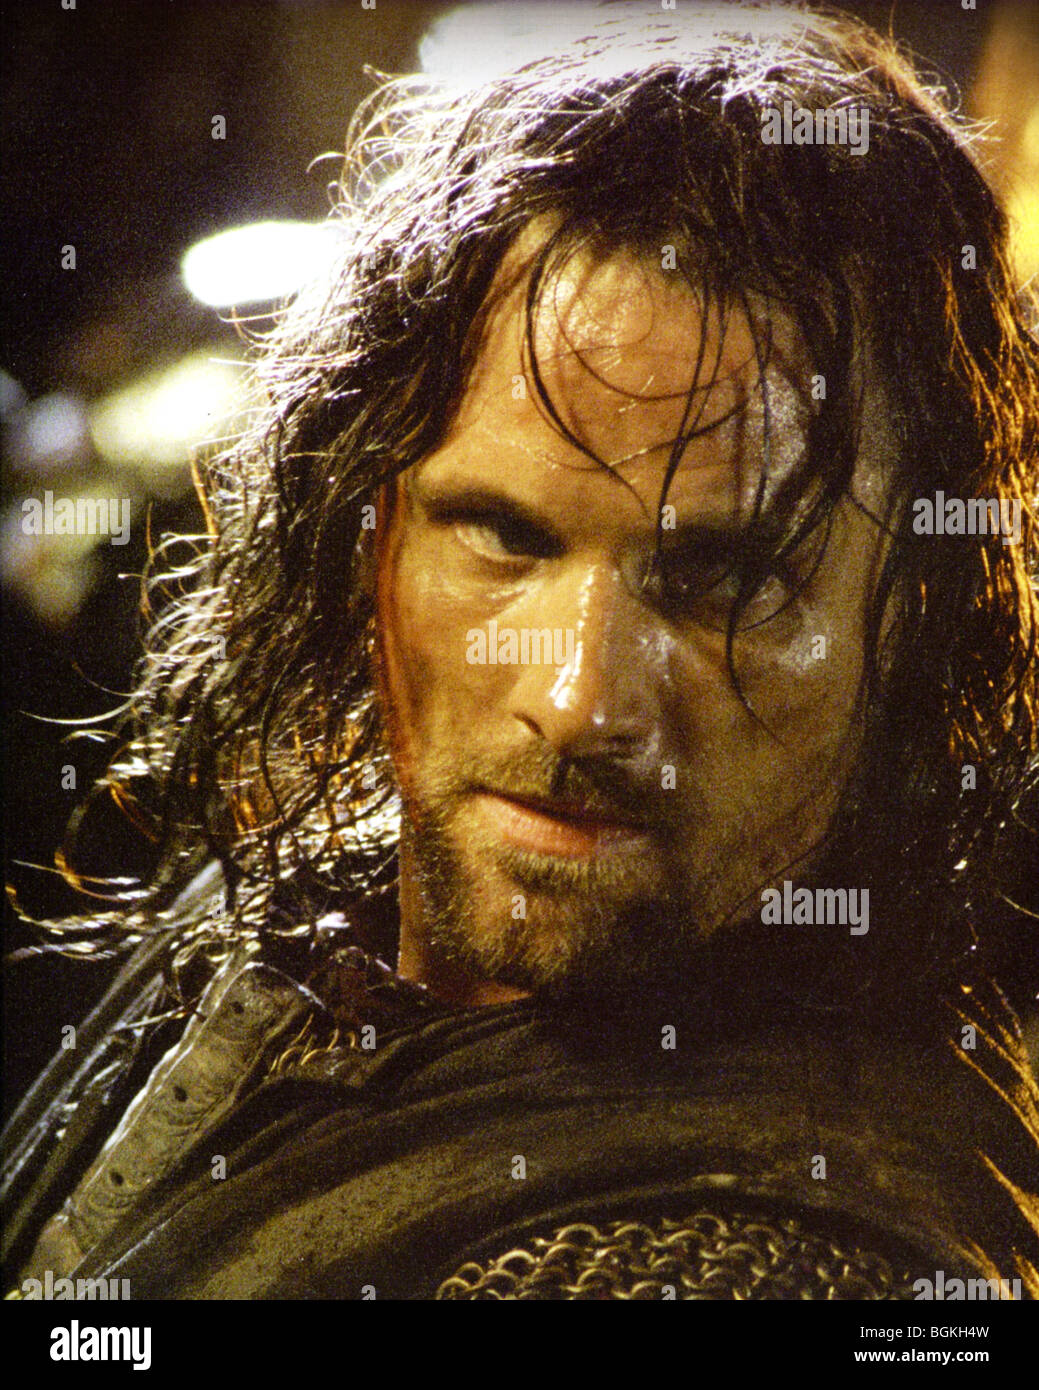 Aragorn immagini e fotografie stock ad alta risoluzione - Alamy